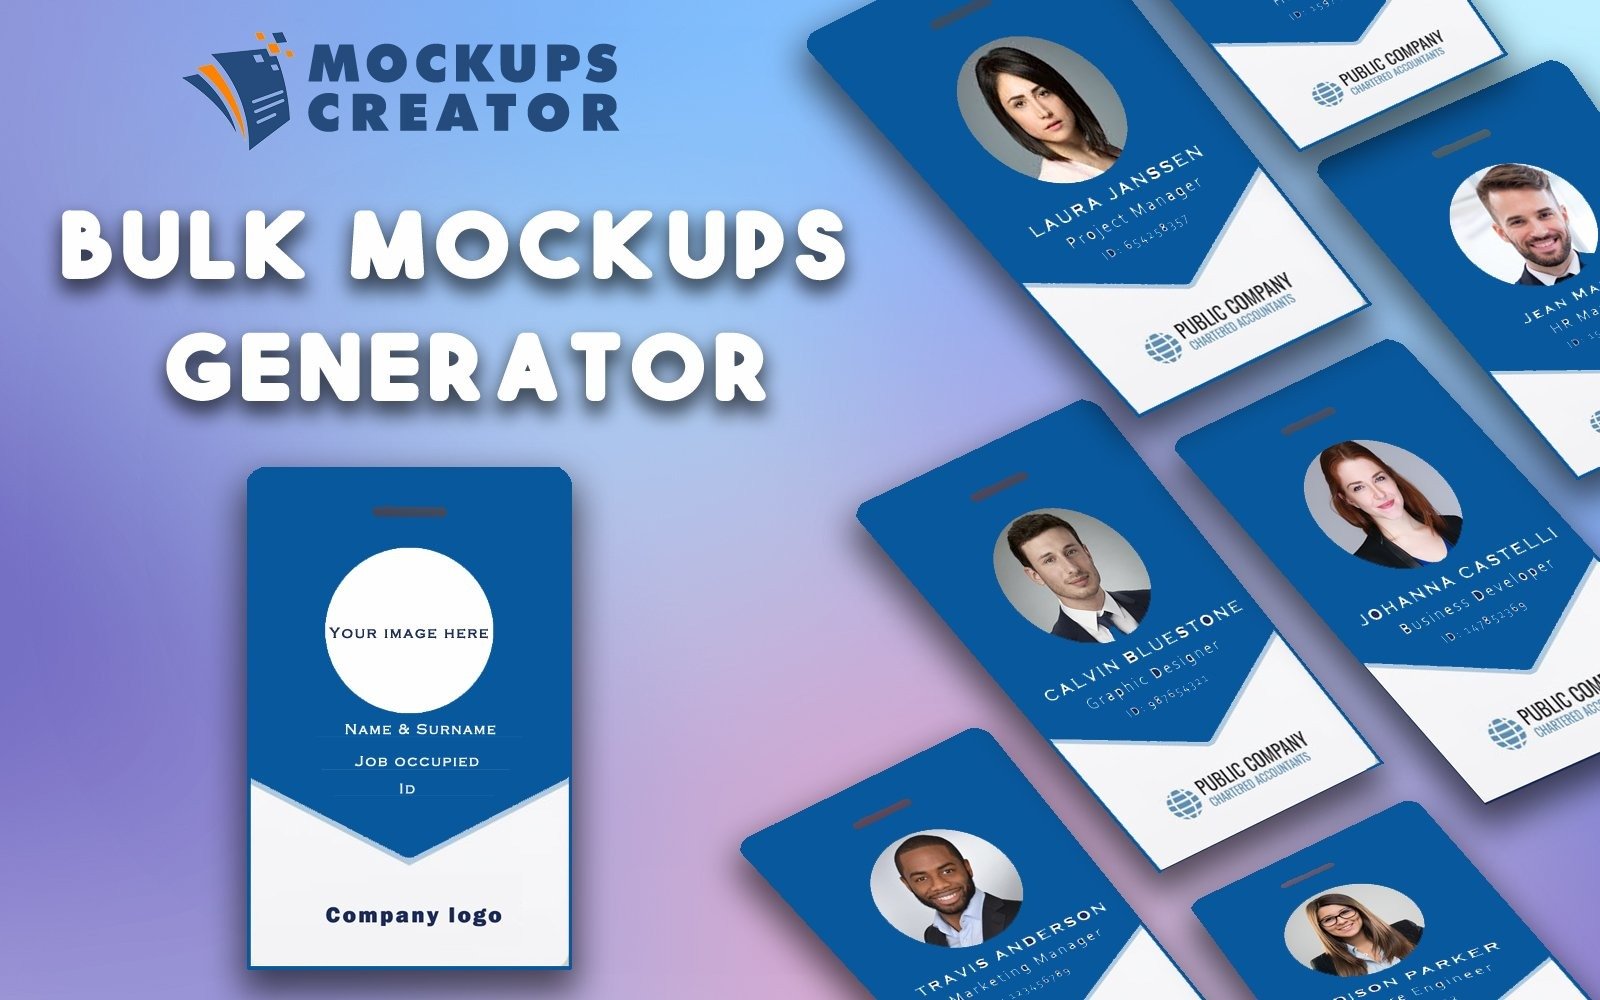 Download Mockups Creator - Automatic Mockups Generator WordPress Plugin